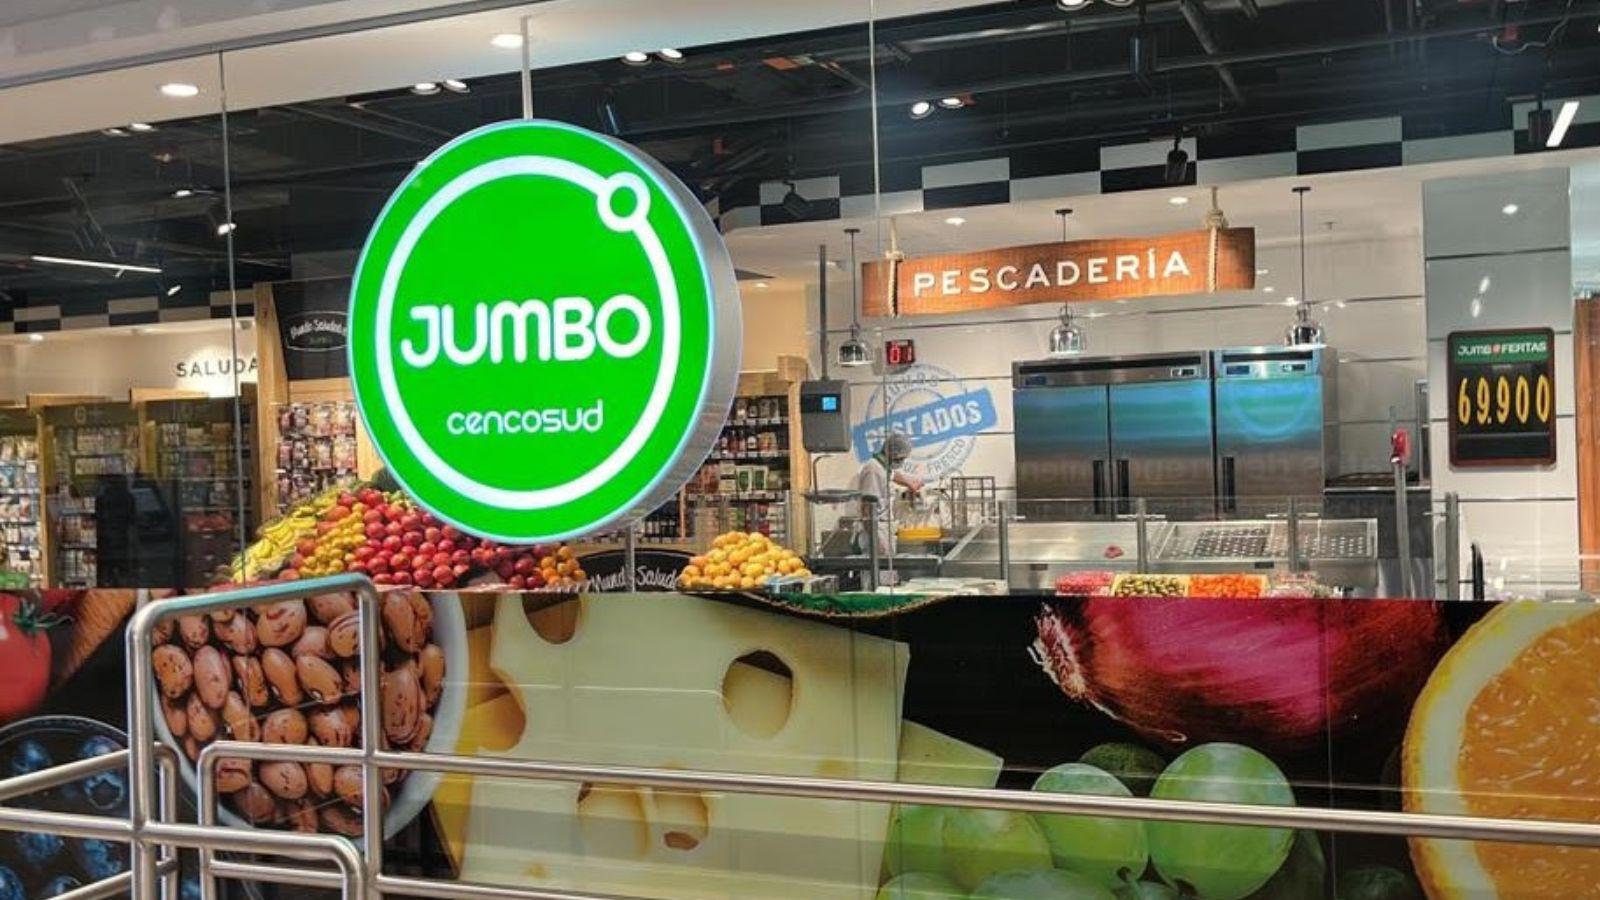 Cencosud prevé un aumento del 25% en las ventas de Jumbo durante las fiestas de fin de año